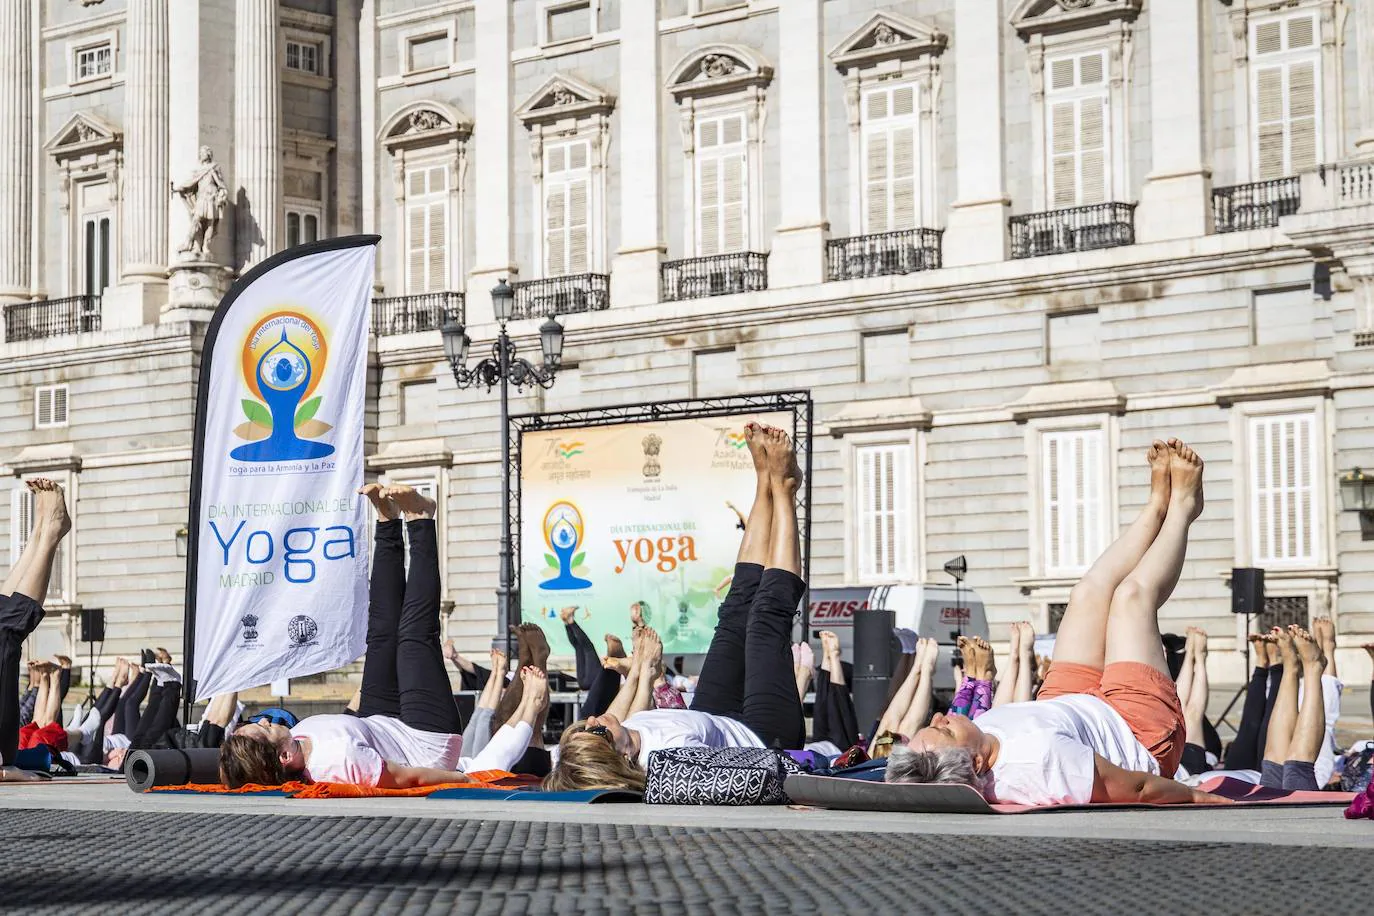 Cita mundial. Durante los últimos siete años, el día internacional del yoga ha ganado popularidad hasta convertirse en un acontecimiento mundial en el que los practicantes de yoga de cientos de ciudades de todo el globo se reúnen para celebrar su amor por la disciplina.